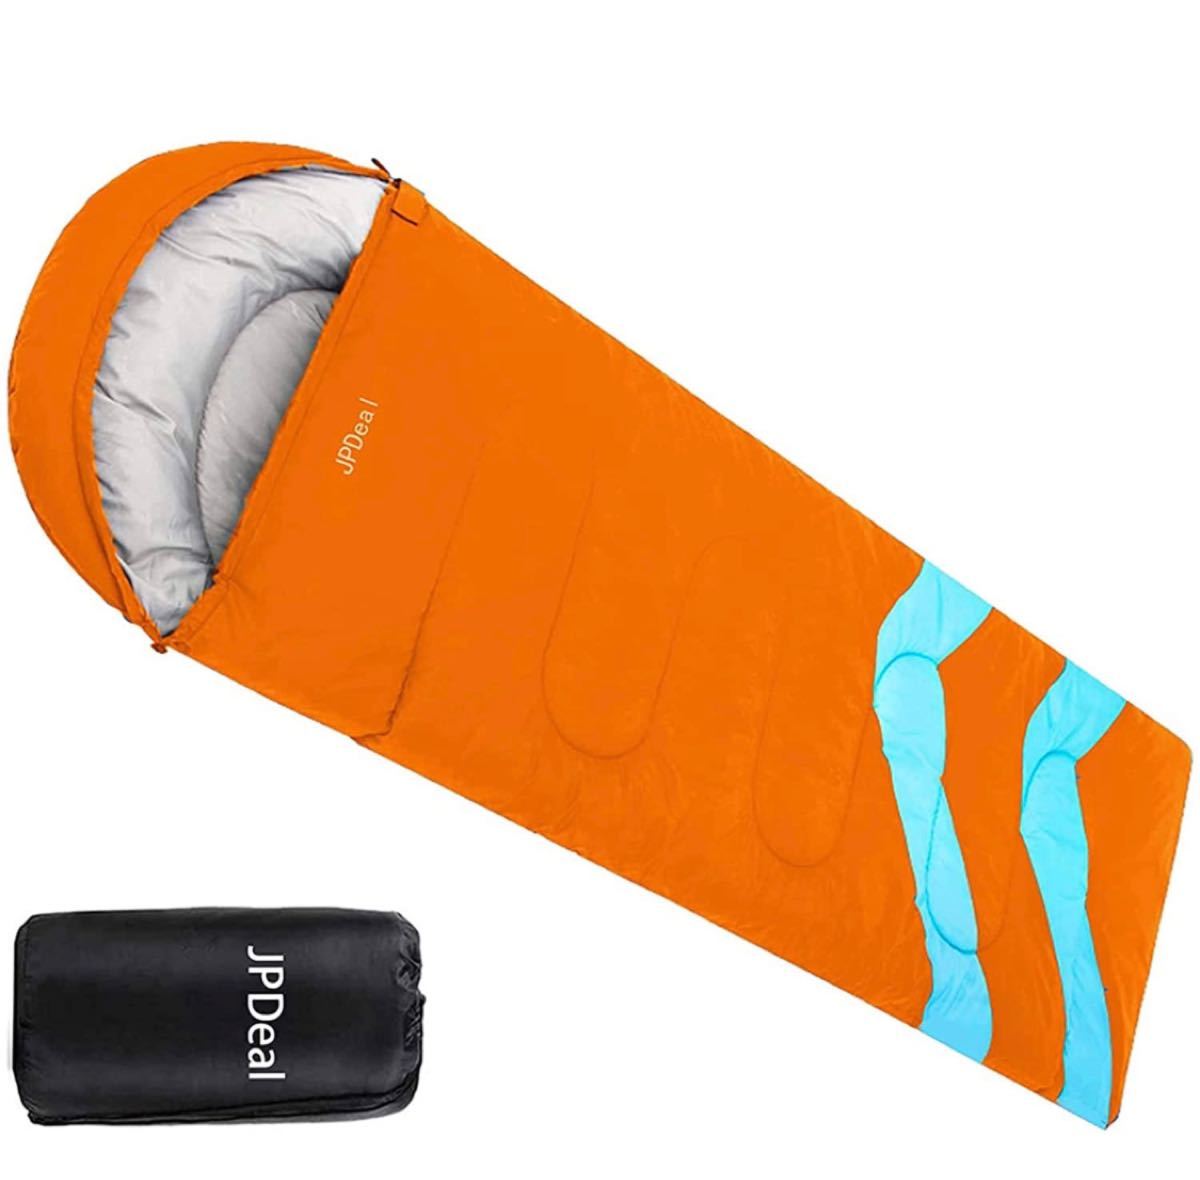 寝袋 封筒型 軽量 保温 210T防水シュラフ コンパクト アウトドア キャンプ 登山 車中泊 防災用 丸洗い